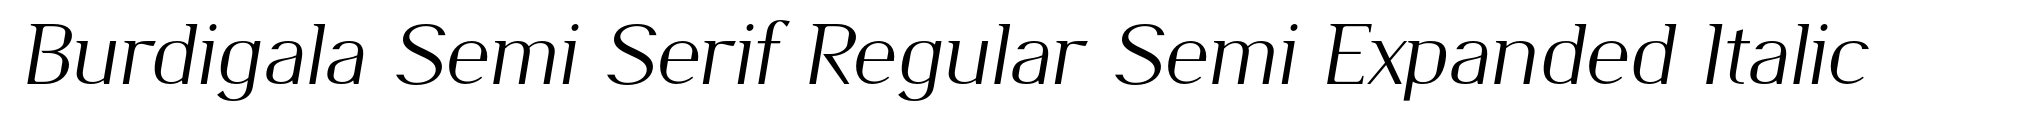 Burdigala Semi Serif Regular Semi Expanded Italic image